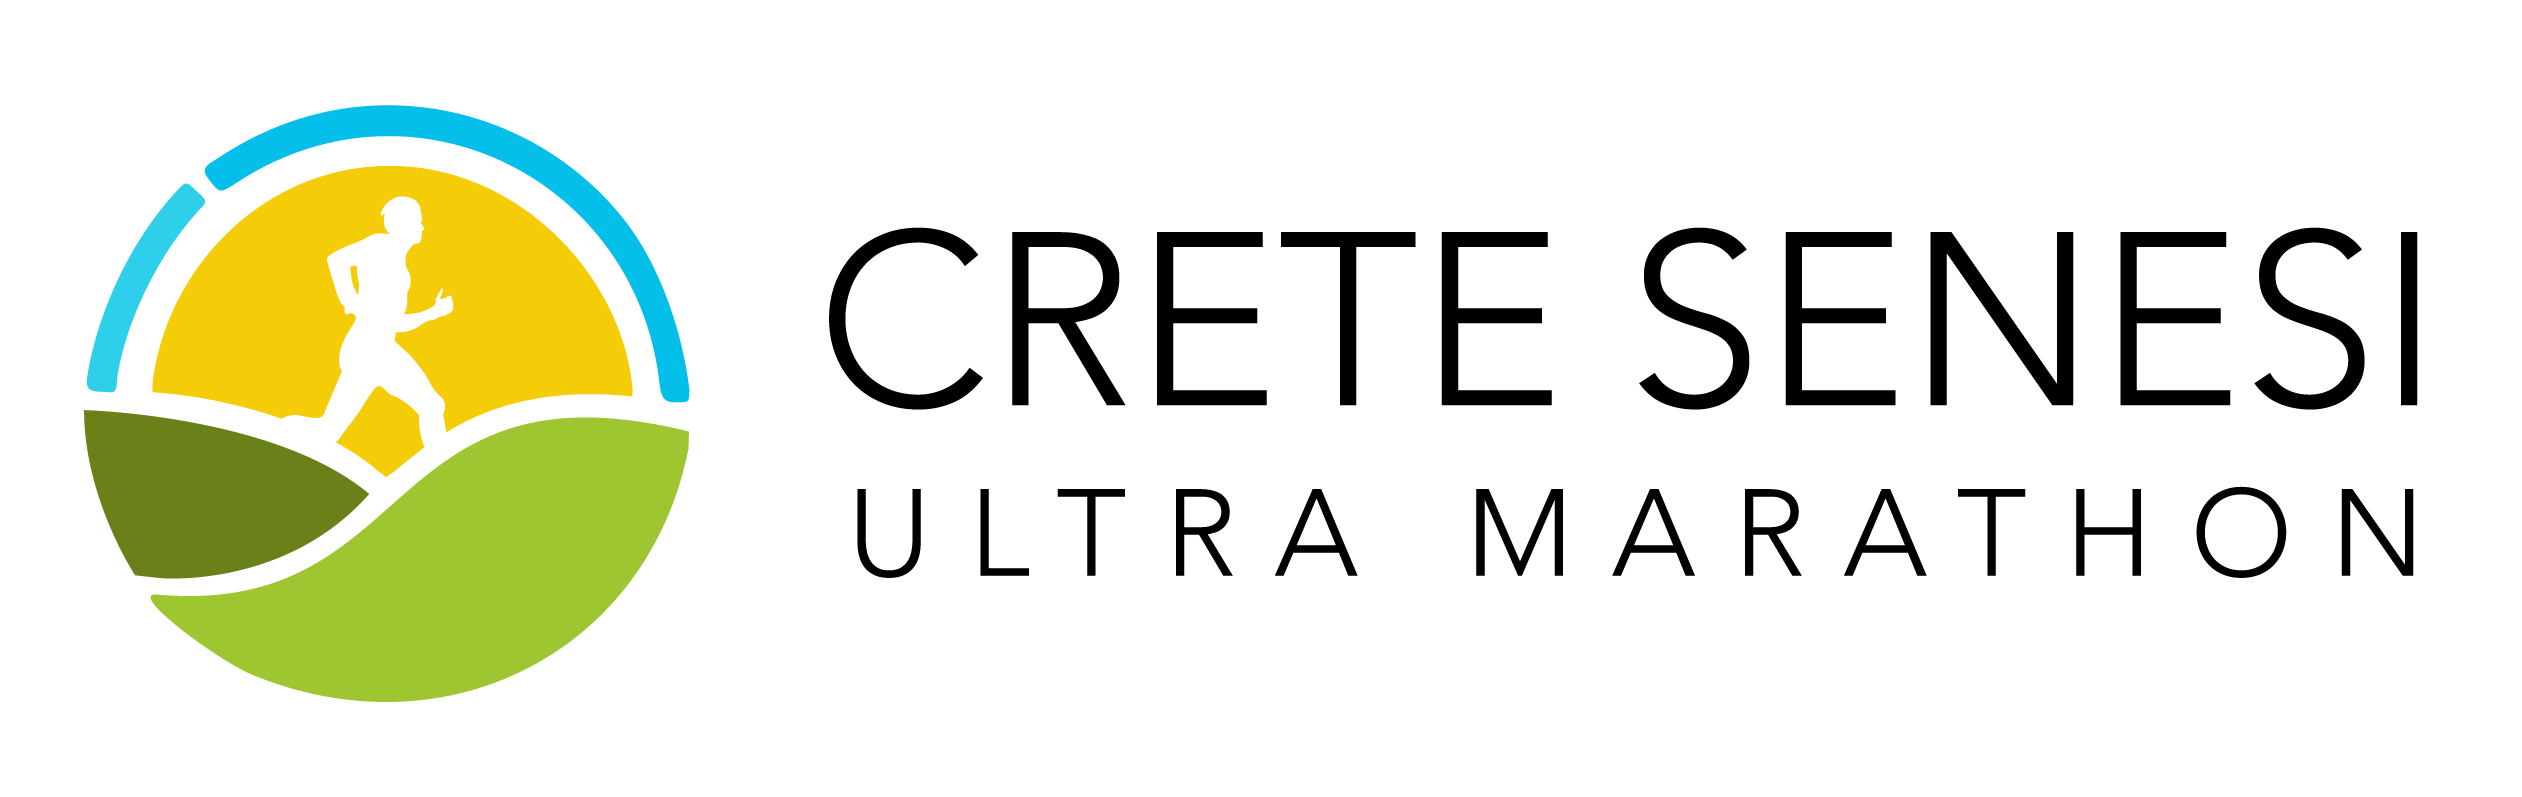 Crete Senesi Ultra Marathon